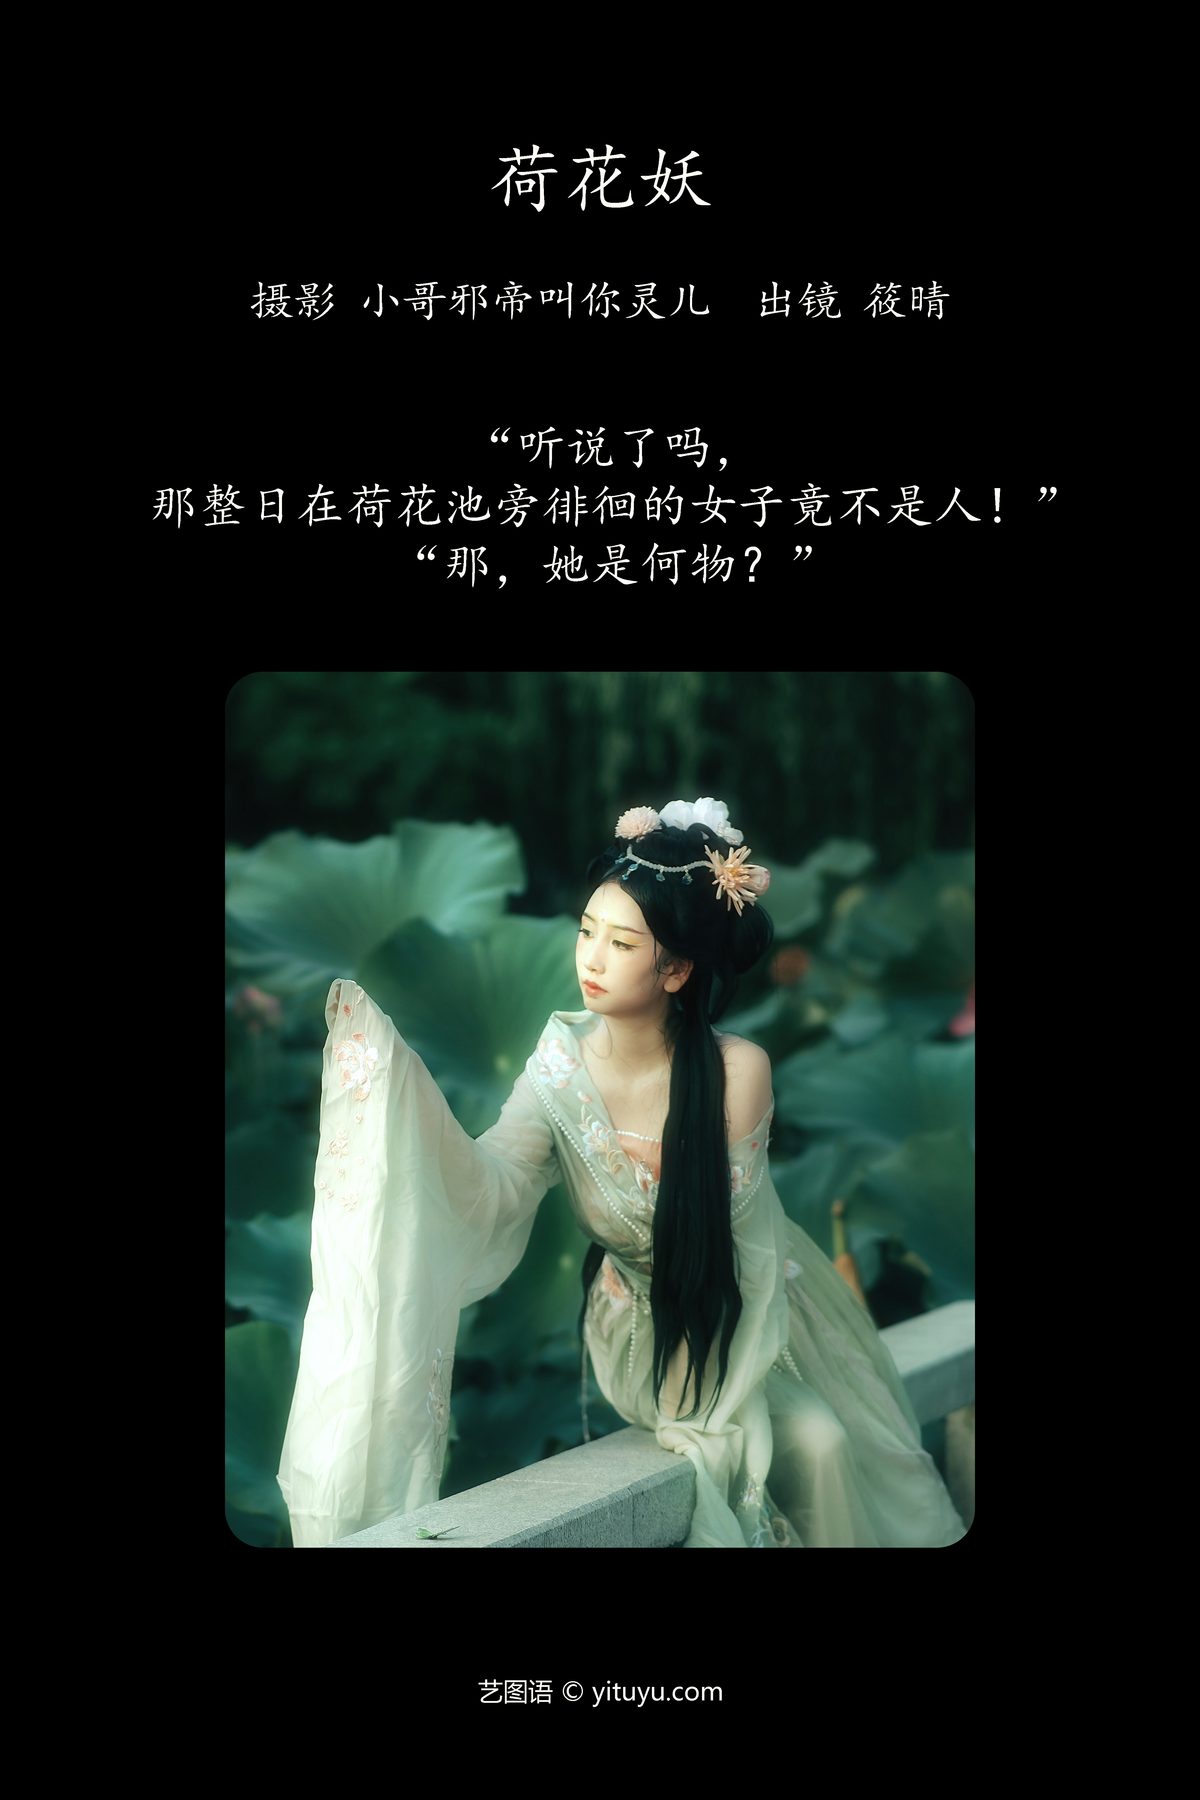 YiTuYu艺图语 Vol 5256 Xiao Qing 0002 2184489336.jpg